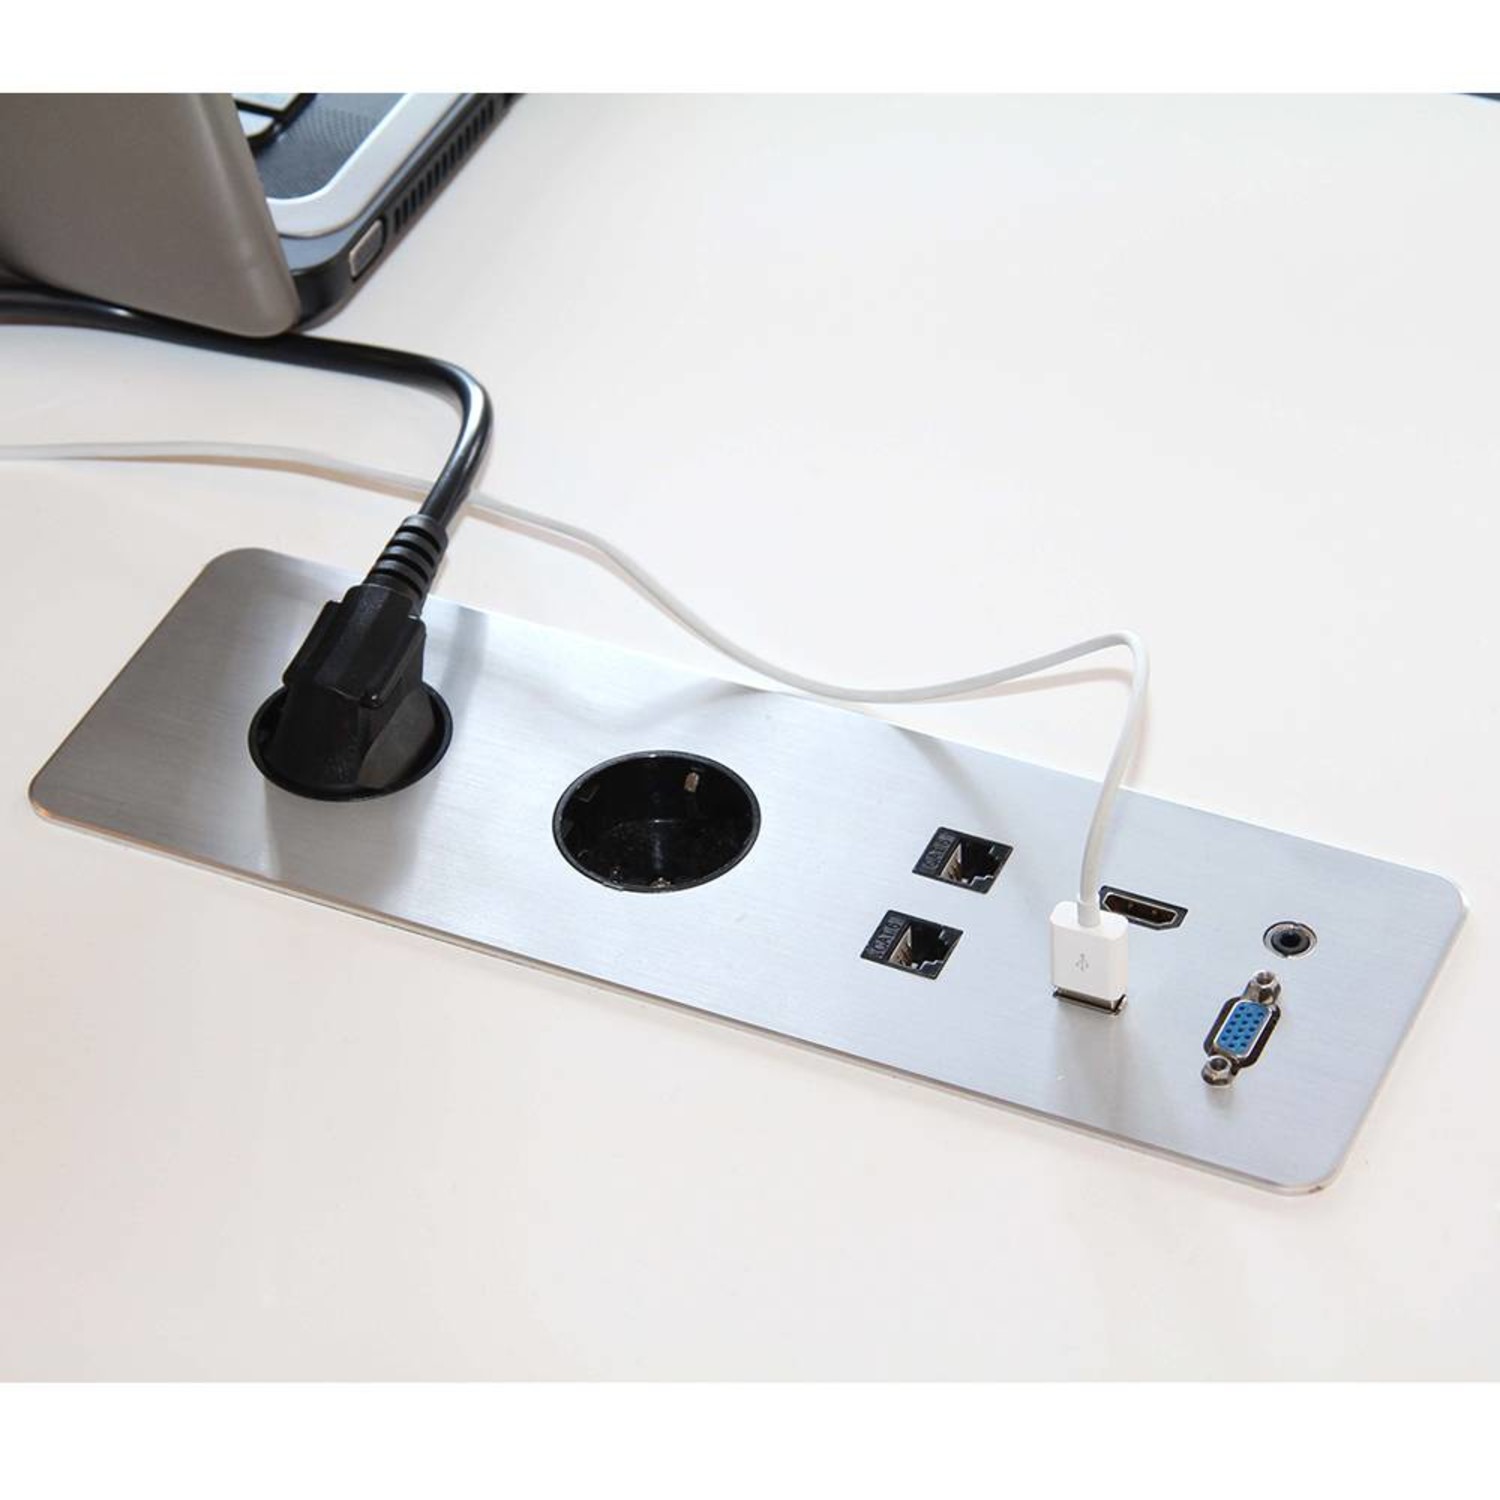 Настольные розетки для офиса. Врезной блок USB. USB Hub 3.0 встраимовый в стол. Розетка USB встраиваемая (5в, 2.1а + 2.1а). Встраиваемая розетка (Elbe Inno el501).